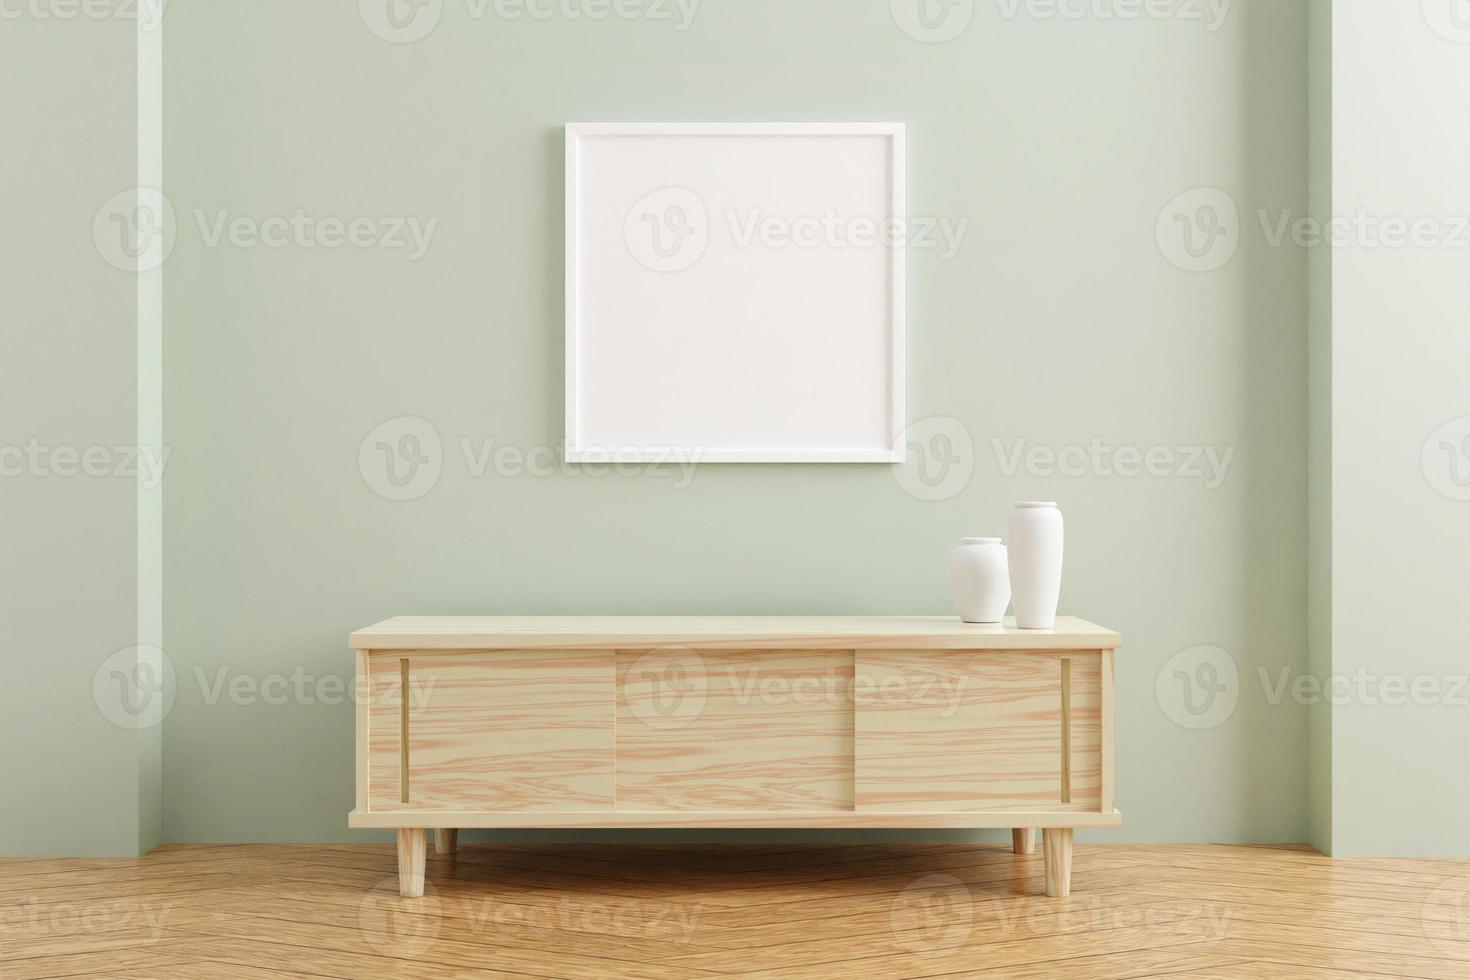 weißes quadratisches posterrahmenmodell auf holztisch im wohnzimmerinnenraum auf leerem pastellfarbenem wandhintergrund. 3D-Rendering. foto